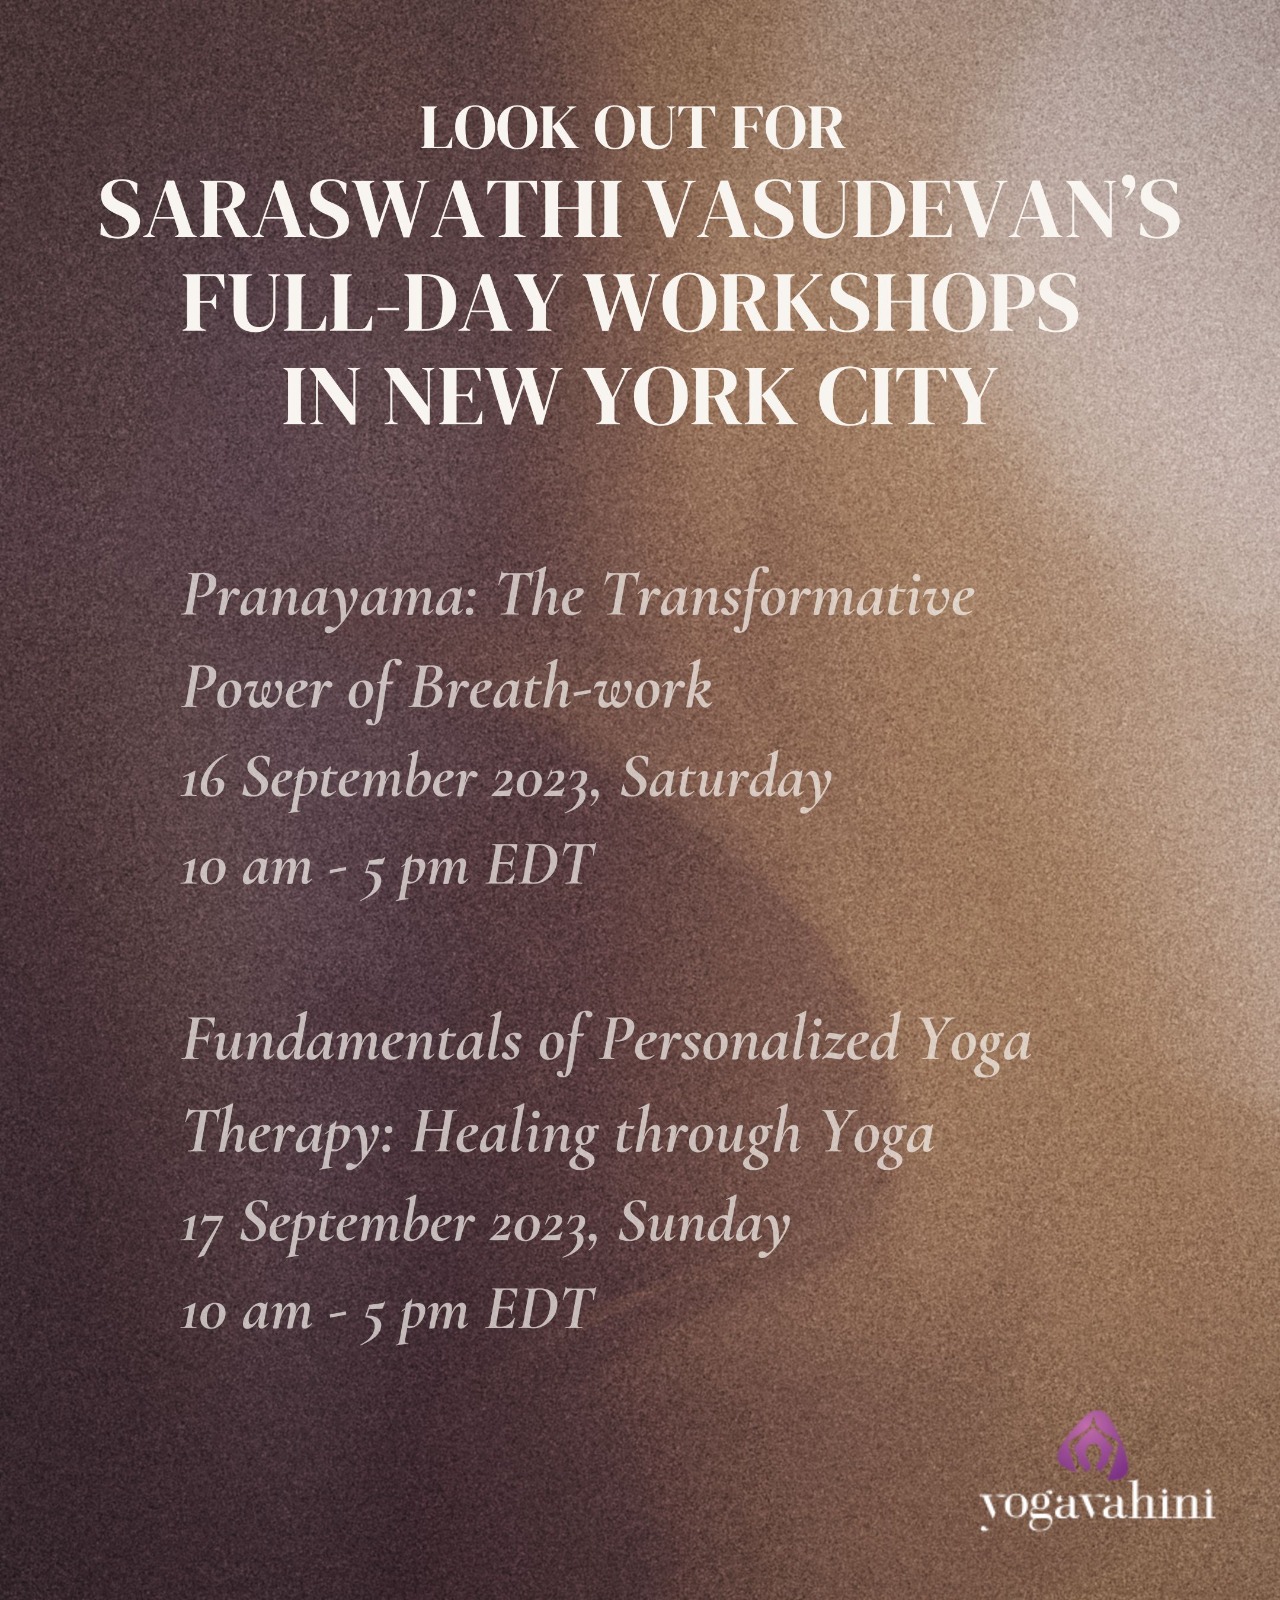 pranayama and personalized yoga therapy